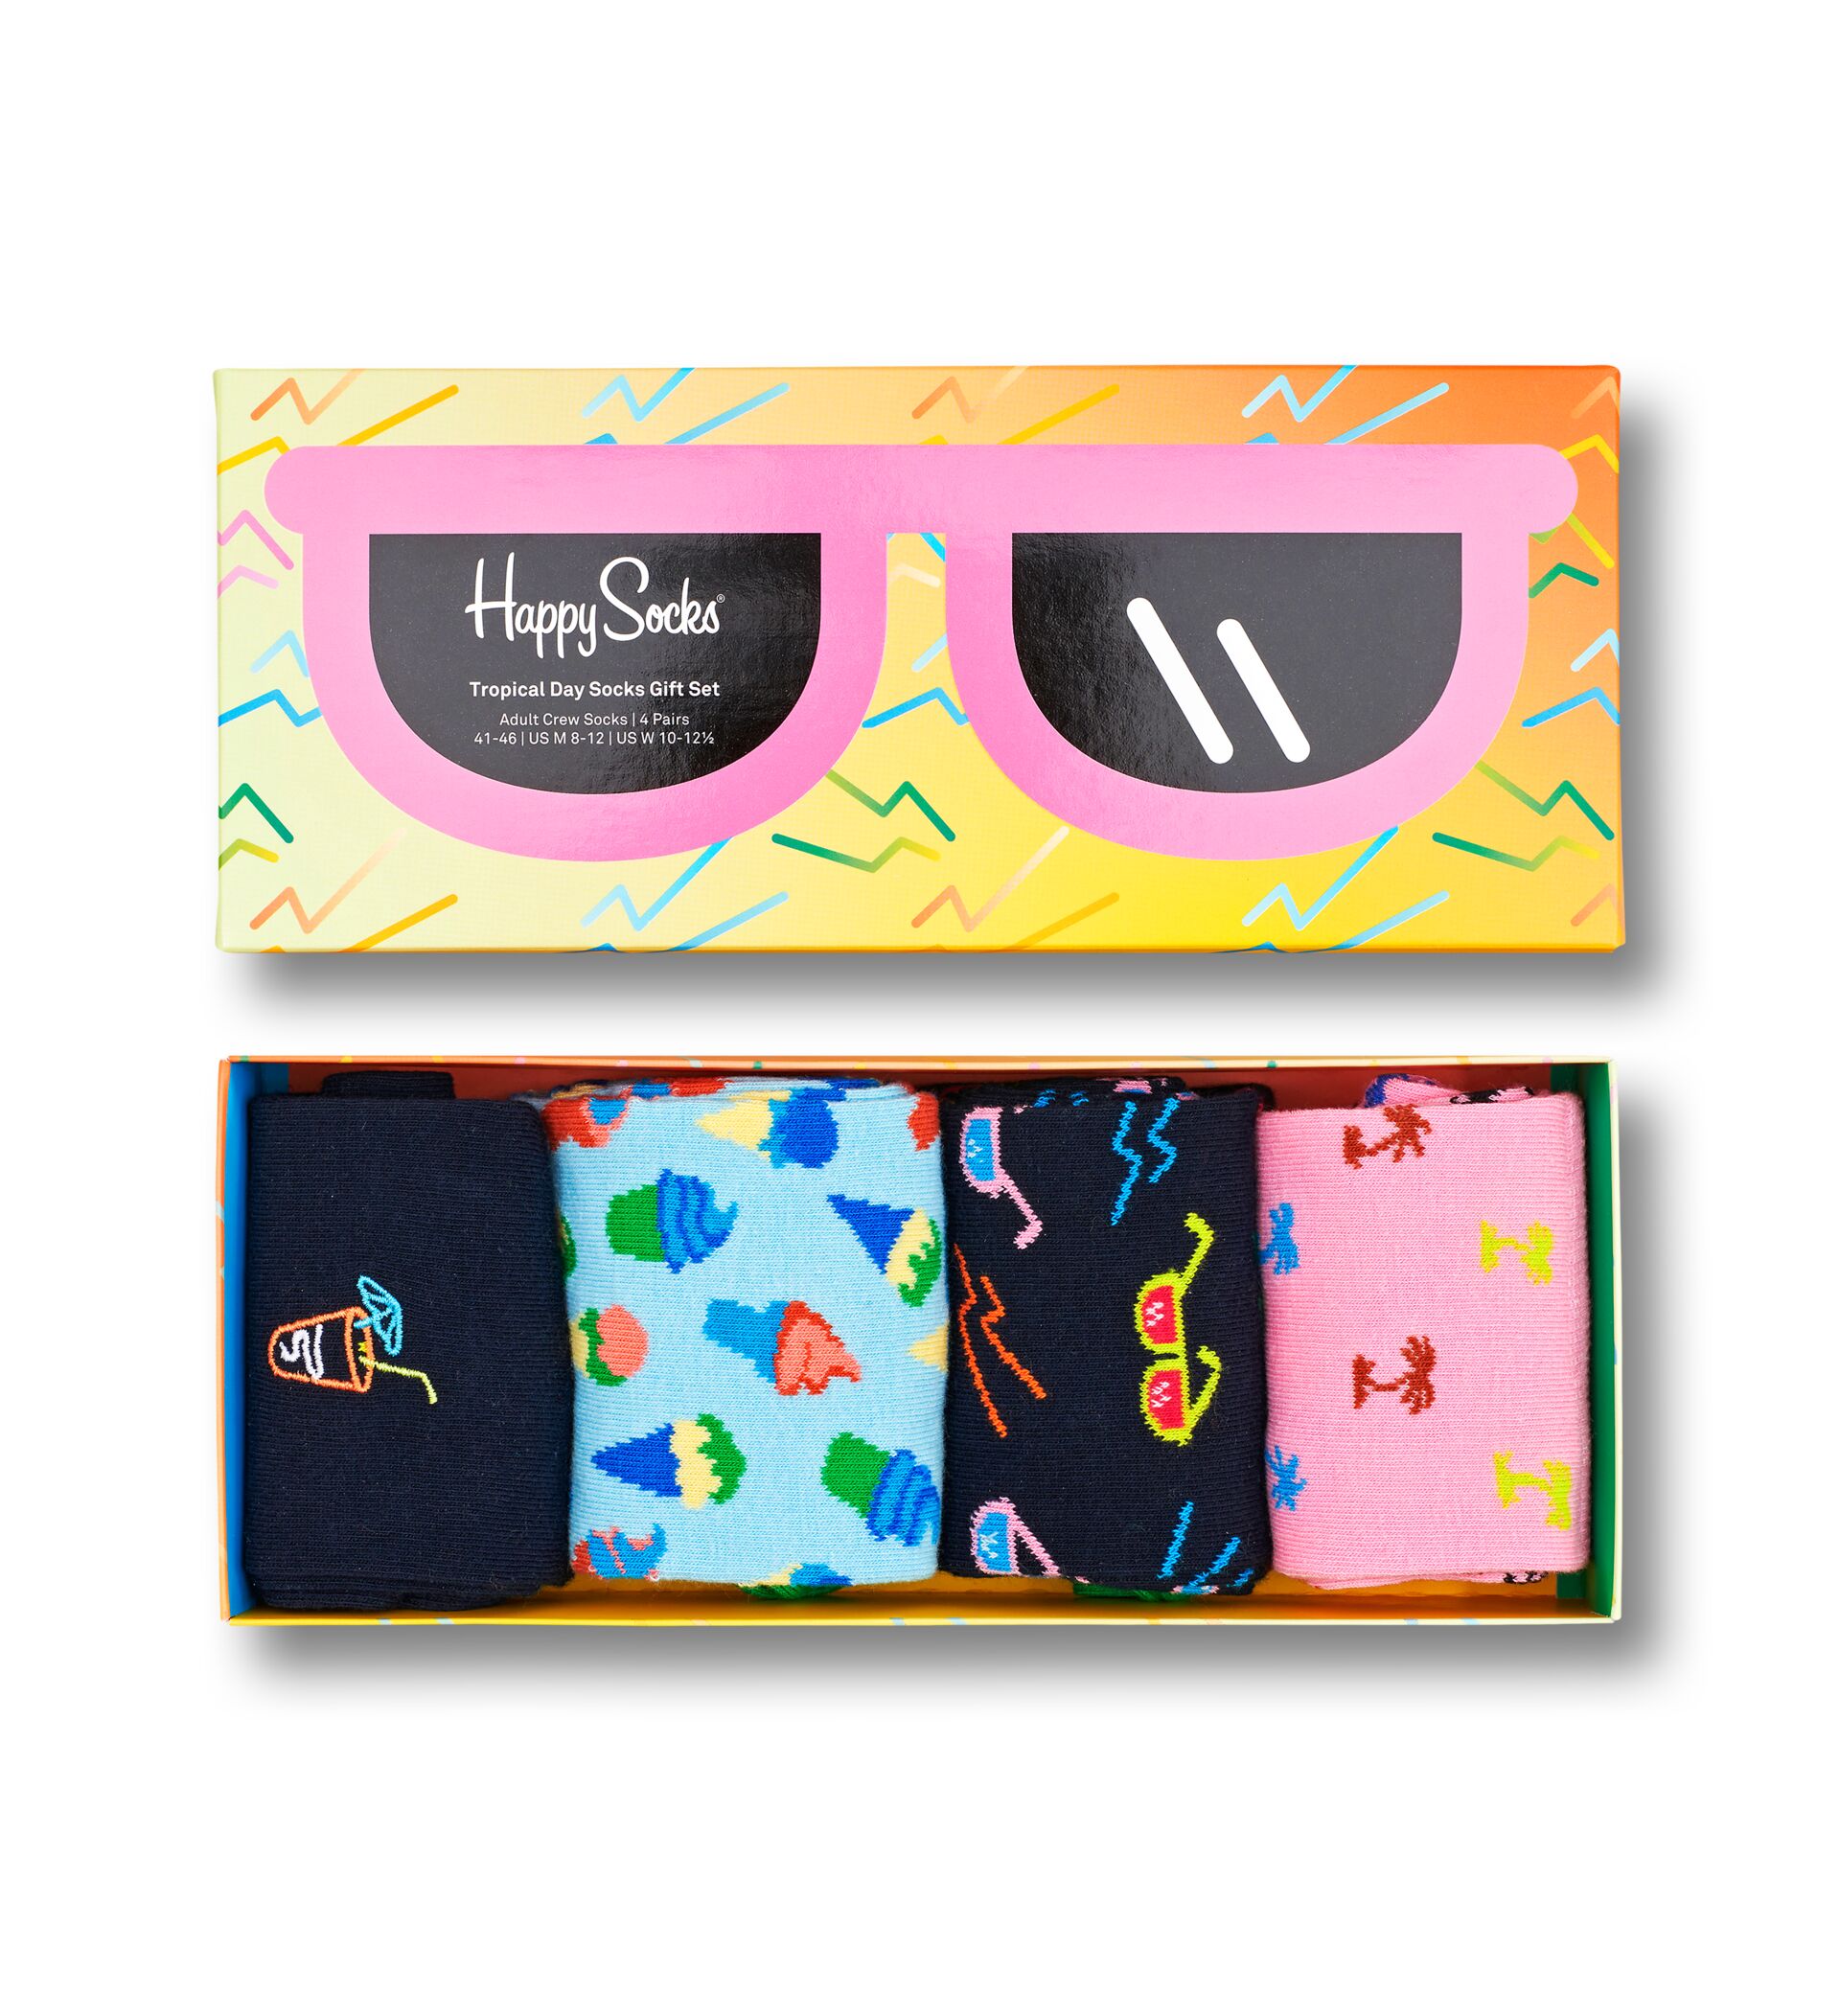 Happy Socks Tropical Day Socks Gift Set 4-Pack - Unisex